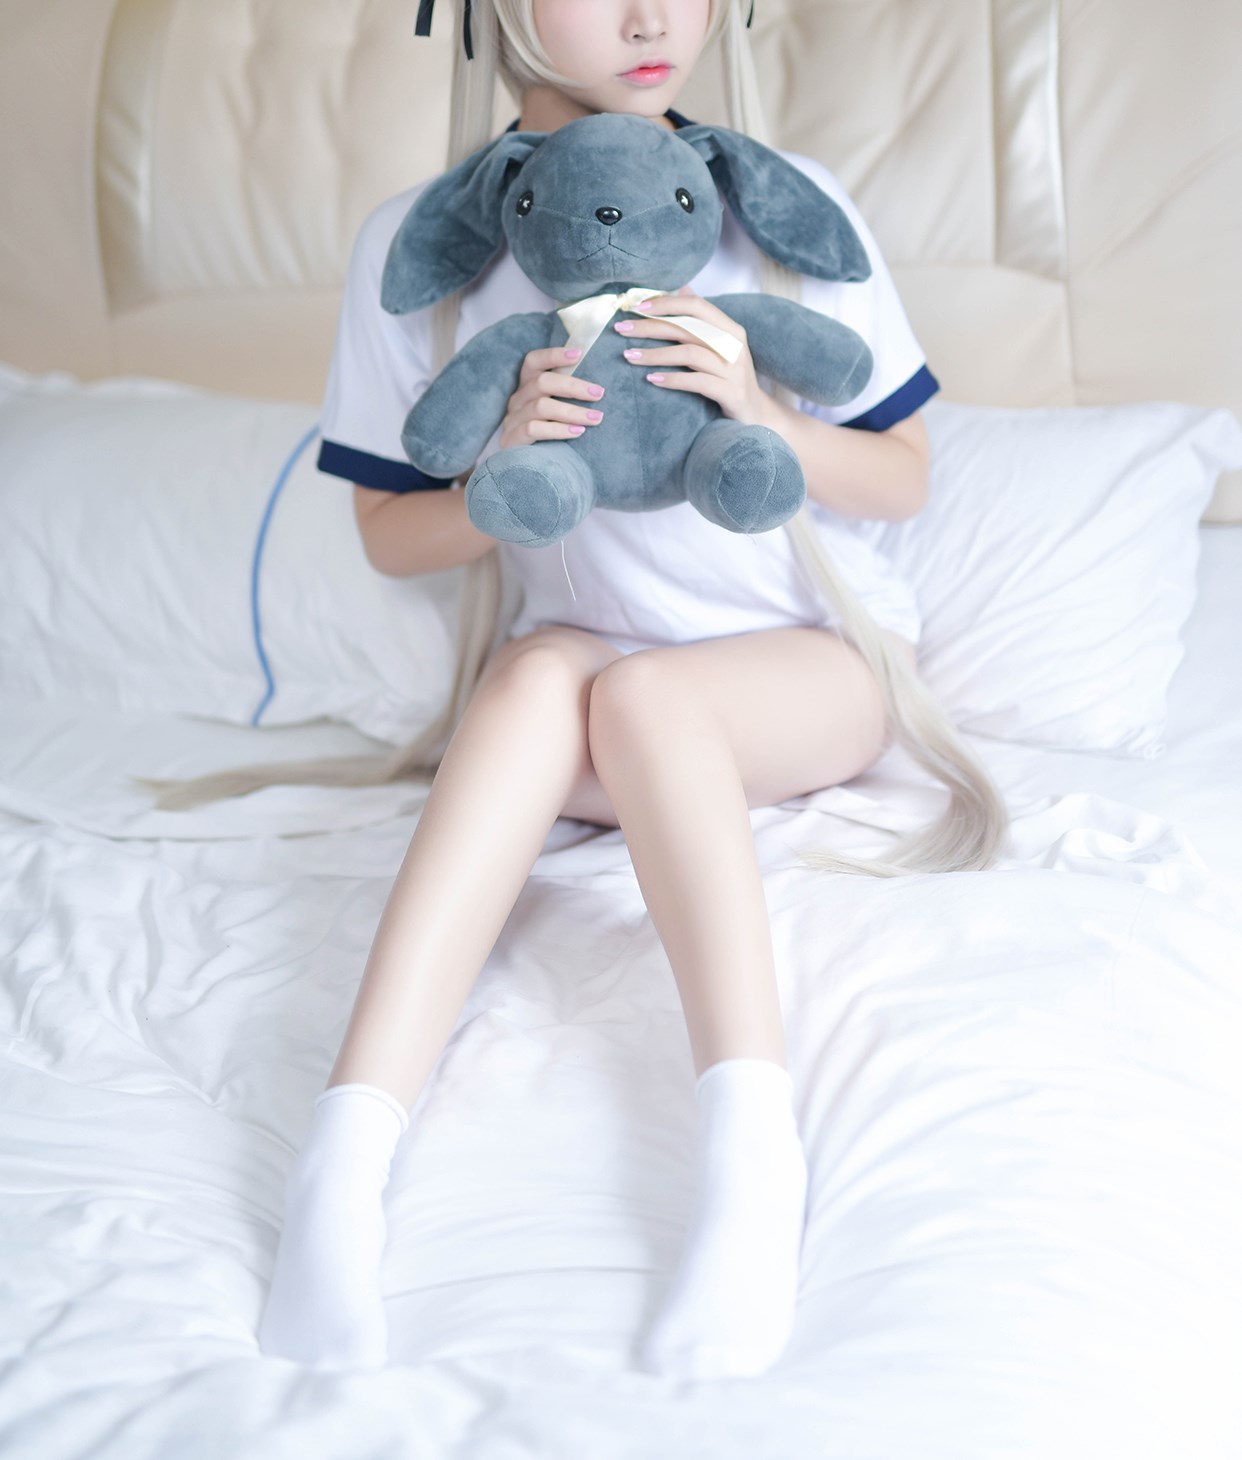 【兔玩映画】体操服穹妹与初音未来 兔玩映画 第8张